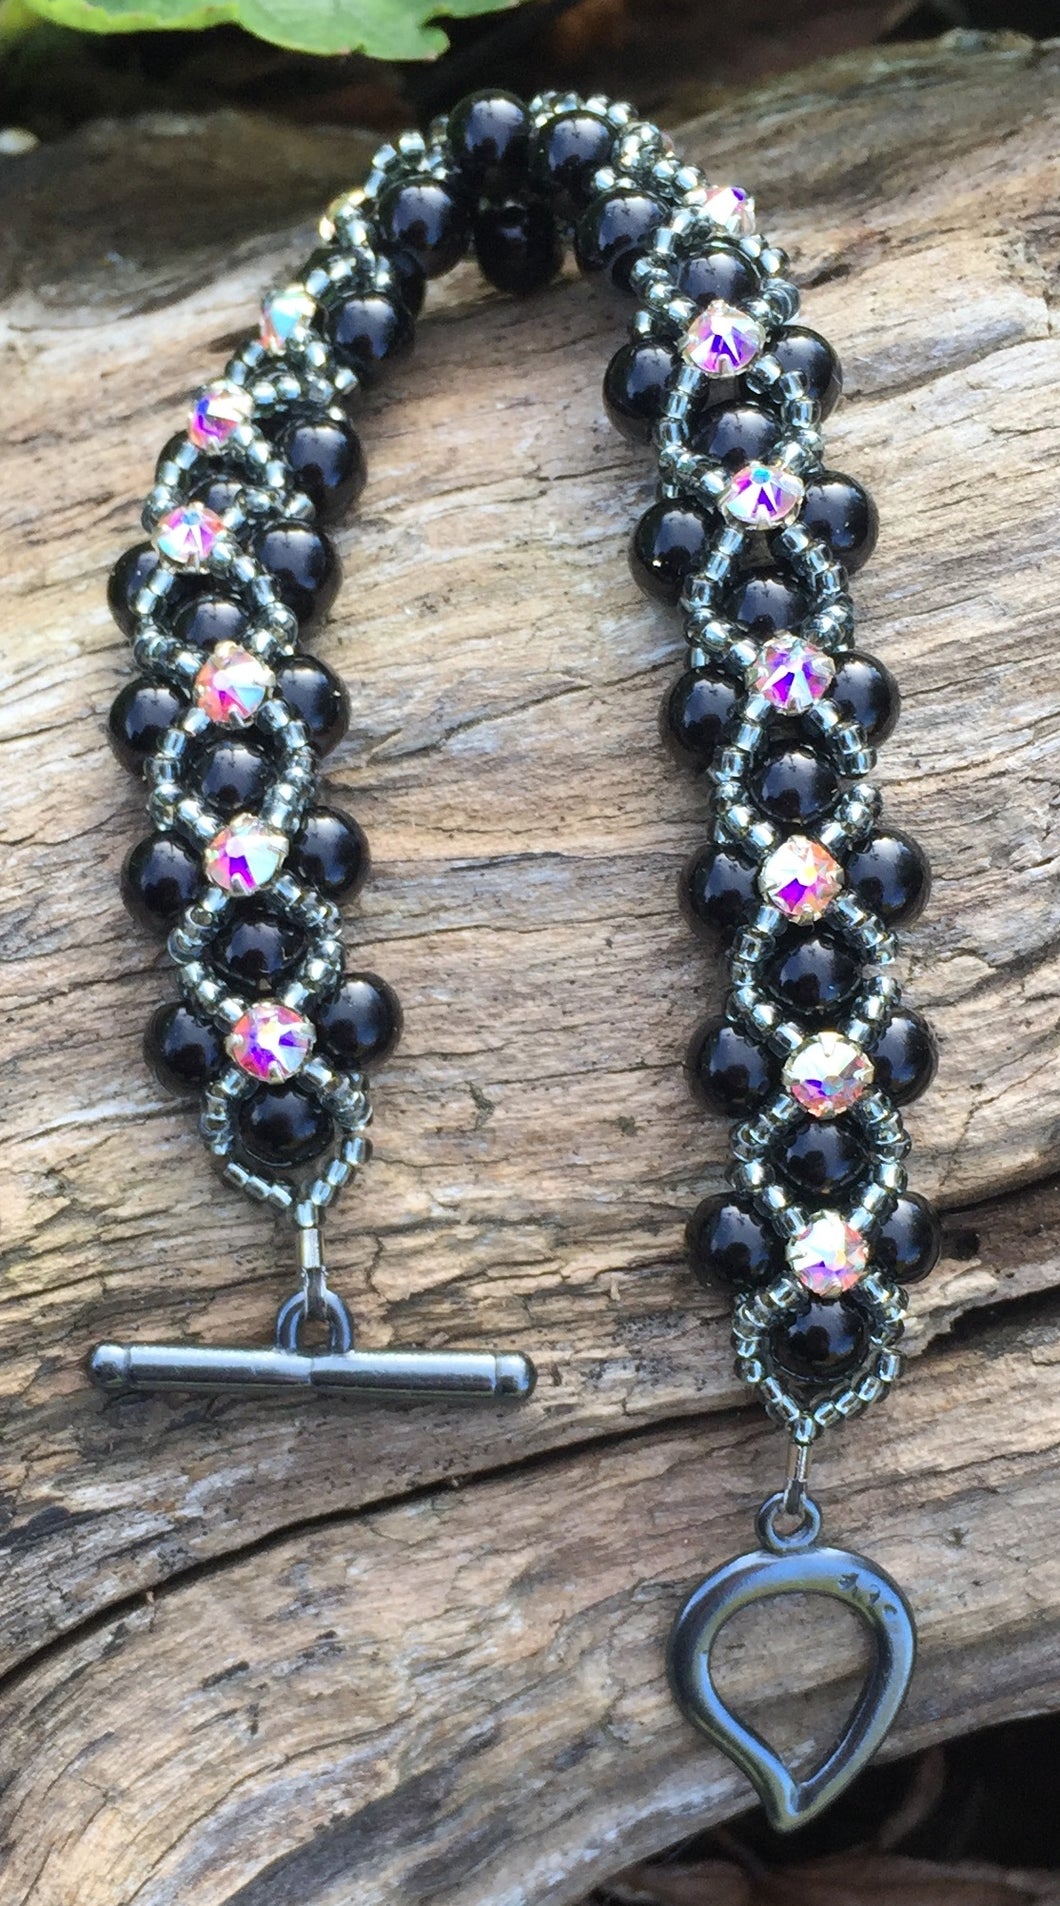 This striking Black glass Pearl and Dark Gray Seed Bead Montee bracelet measures 7 1/8